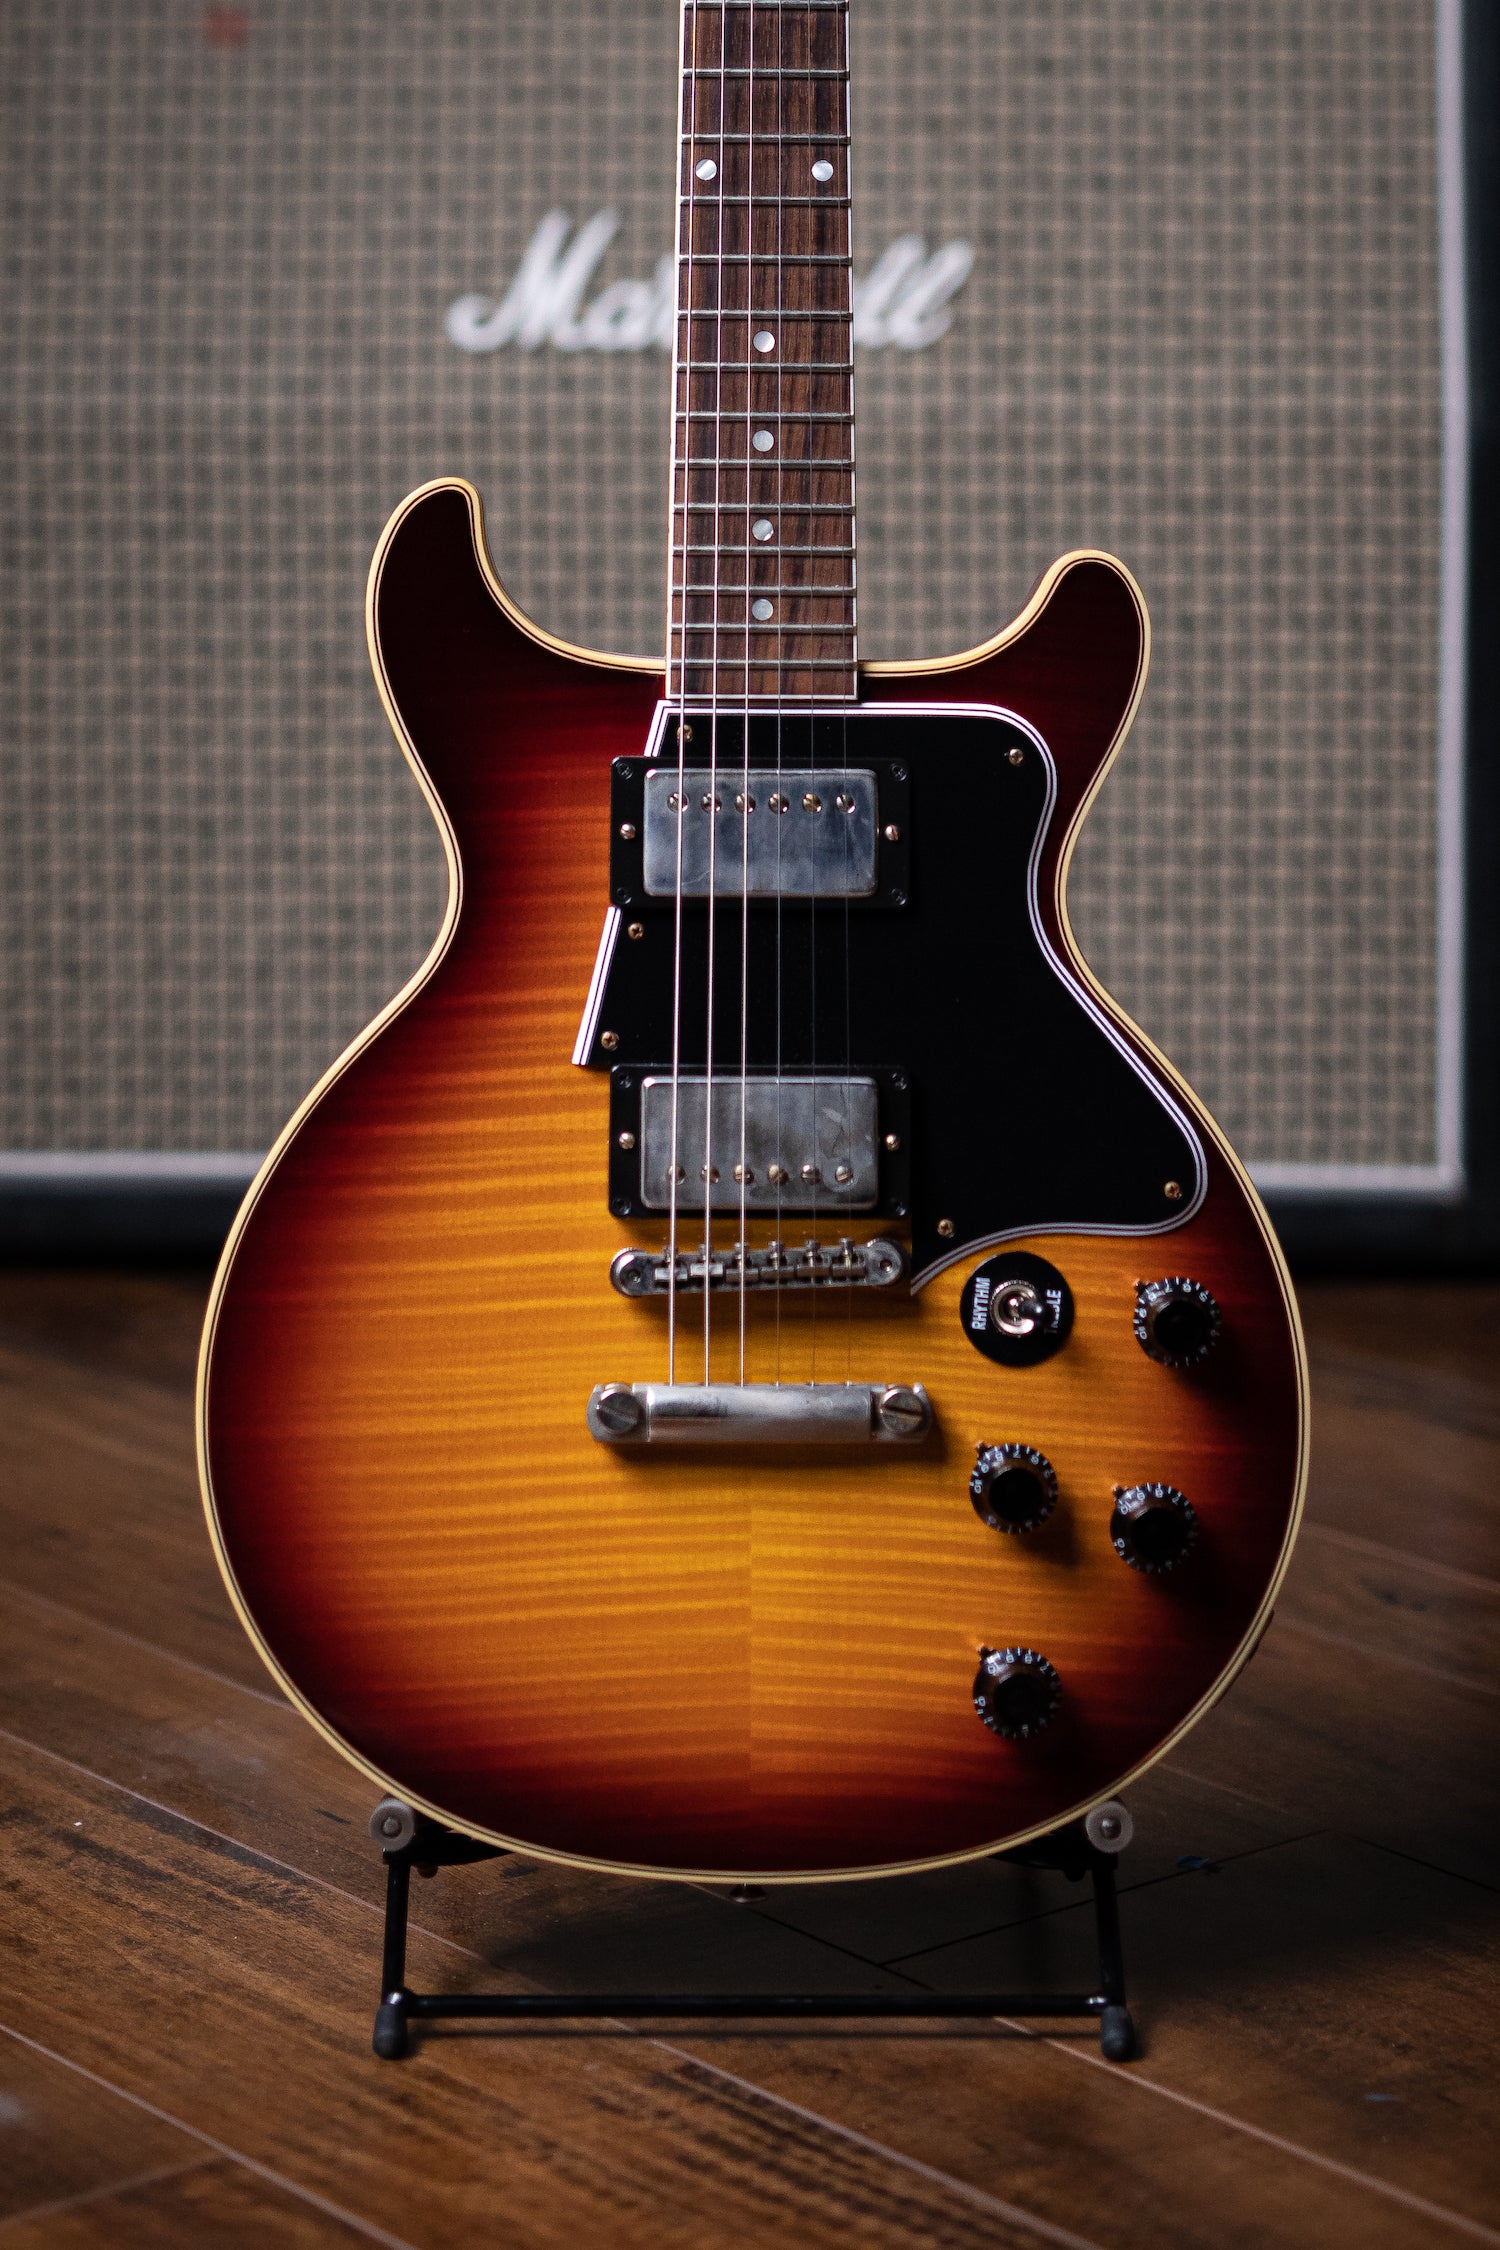 Gibson Les Paul Special Double Cut Electric Guitar - VOS Bourbon